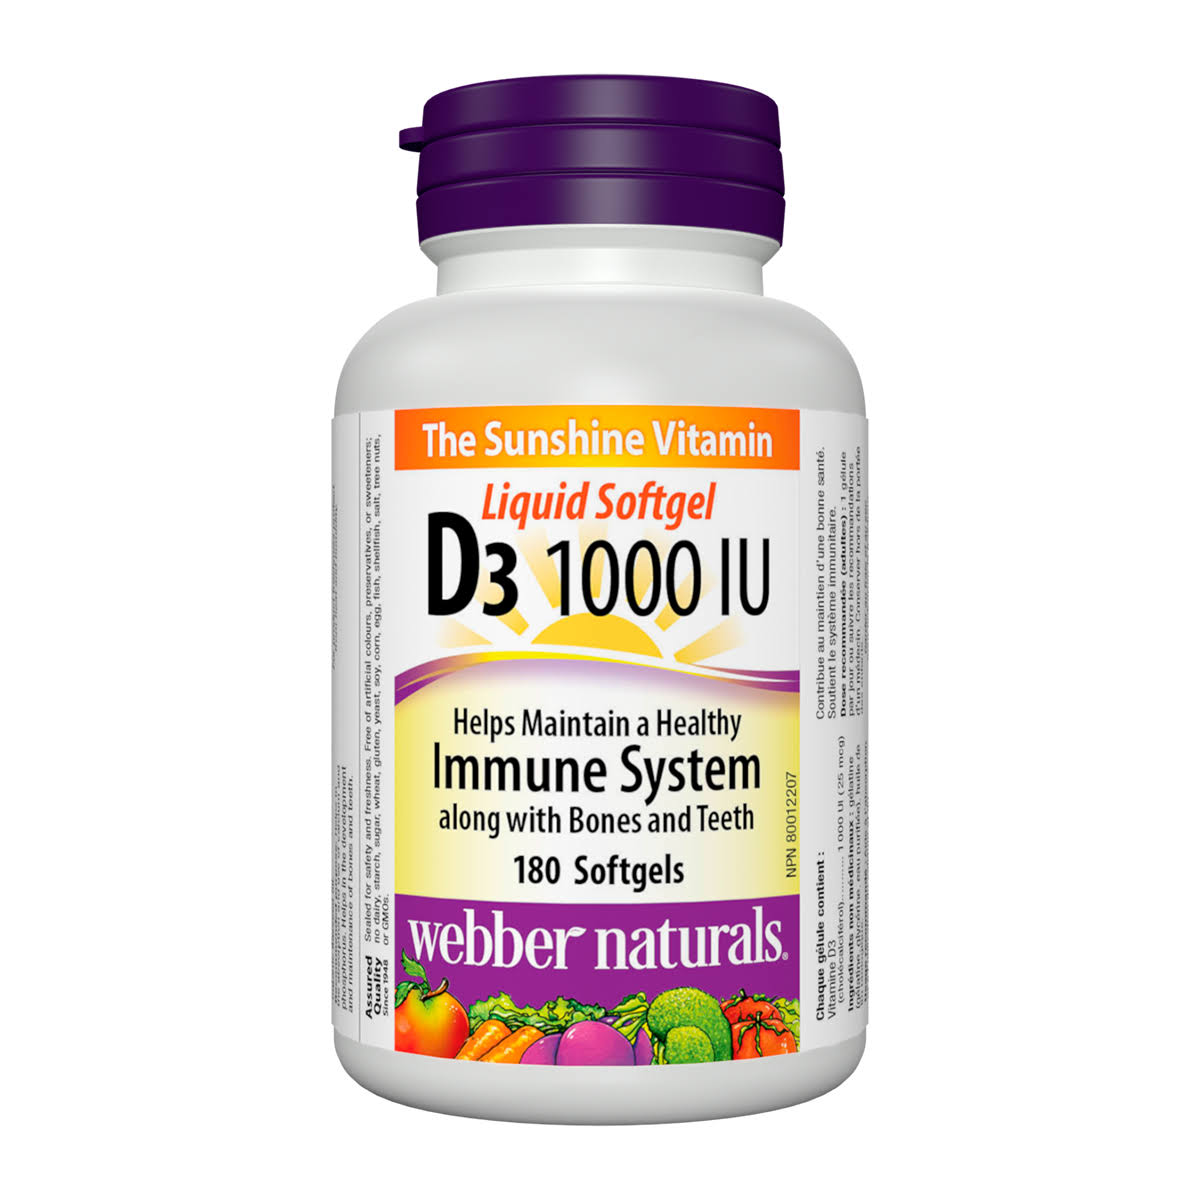 Webber Naturals Vitamin D3 Softgels - 1000 UI